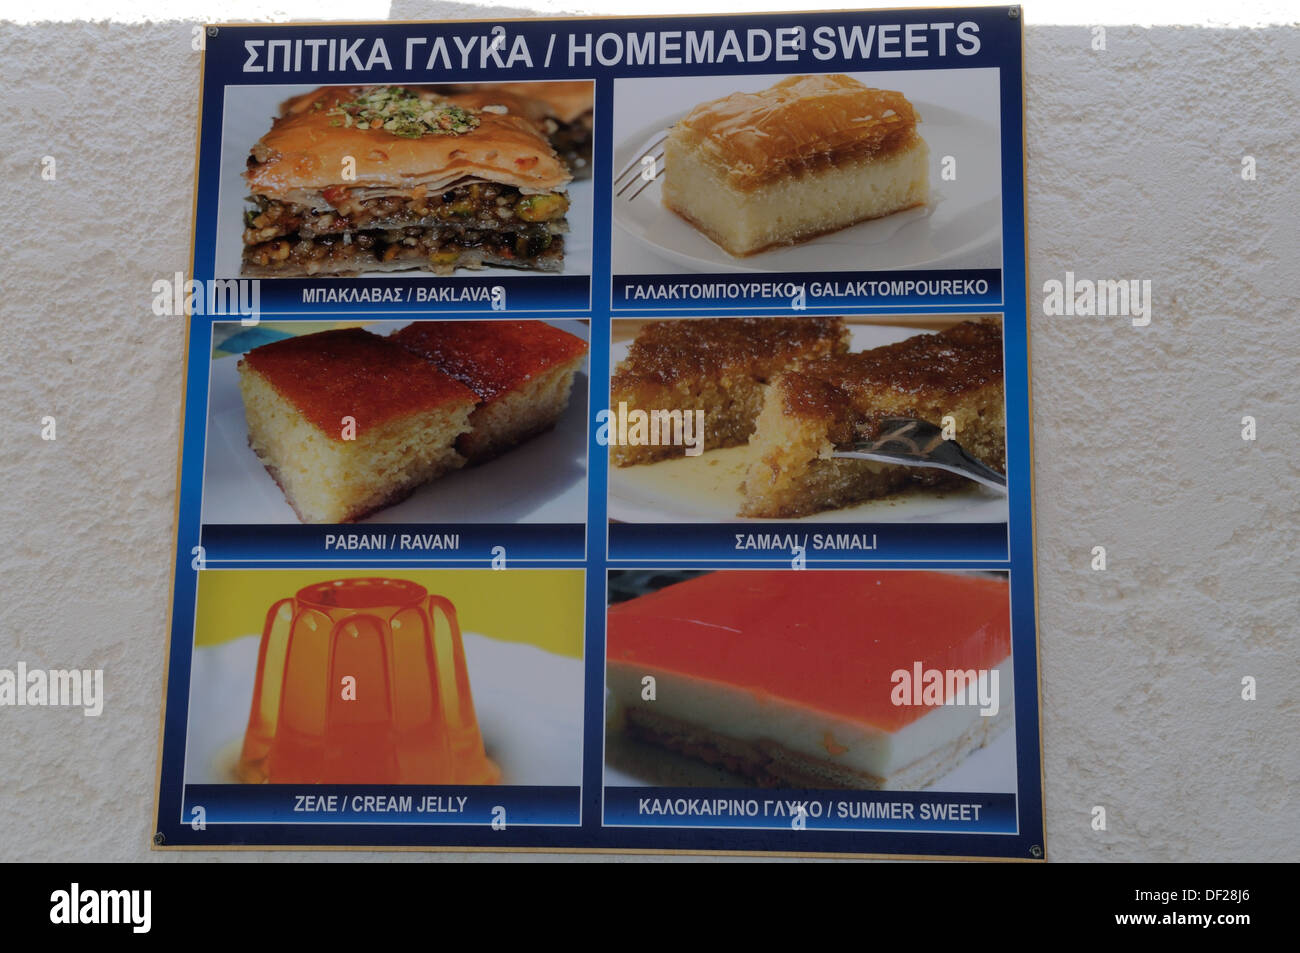 Un signe montrant une sélection de desserts faits maison sweest les déserts à l'extérieur d'un restaurant Halki Chalki Le Dodécanèse Grèce Banque D'Images